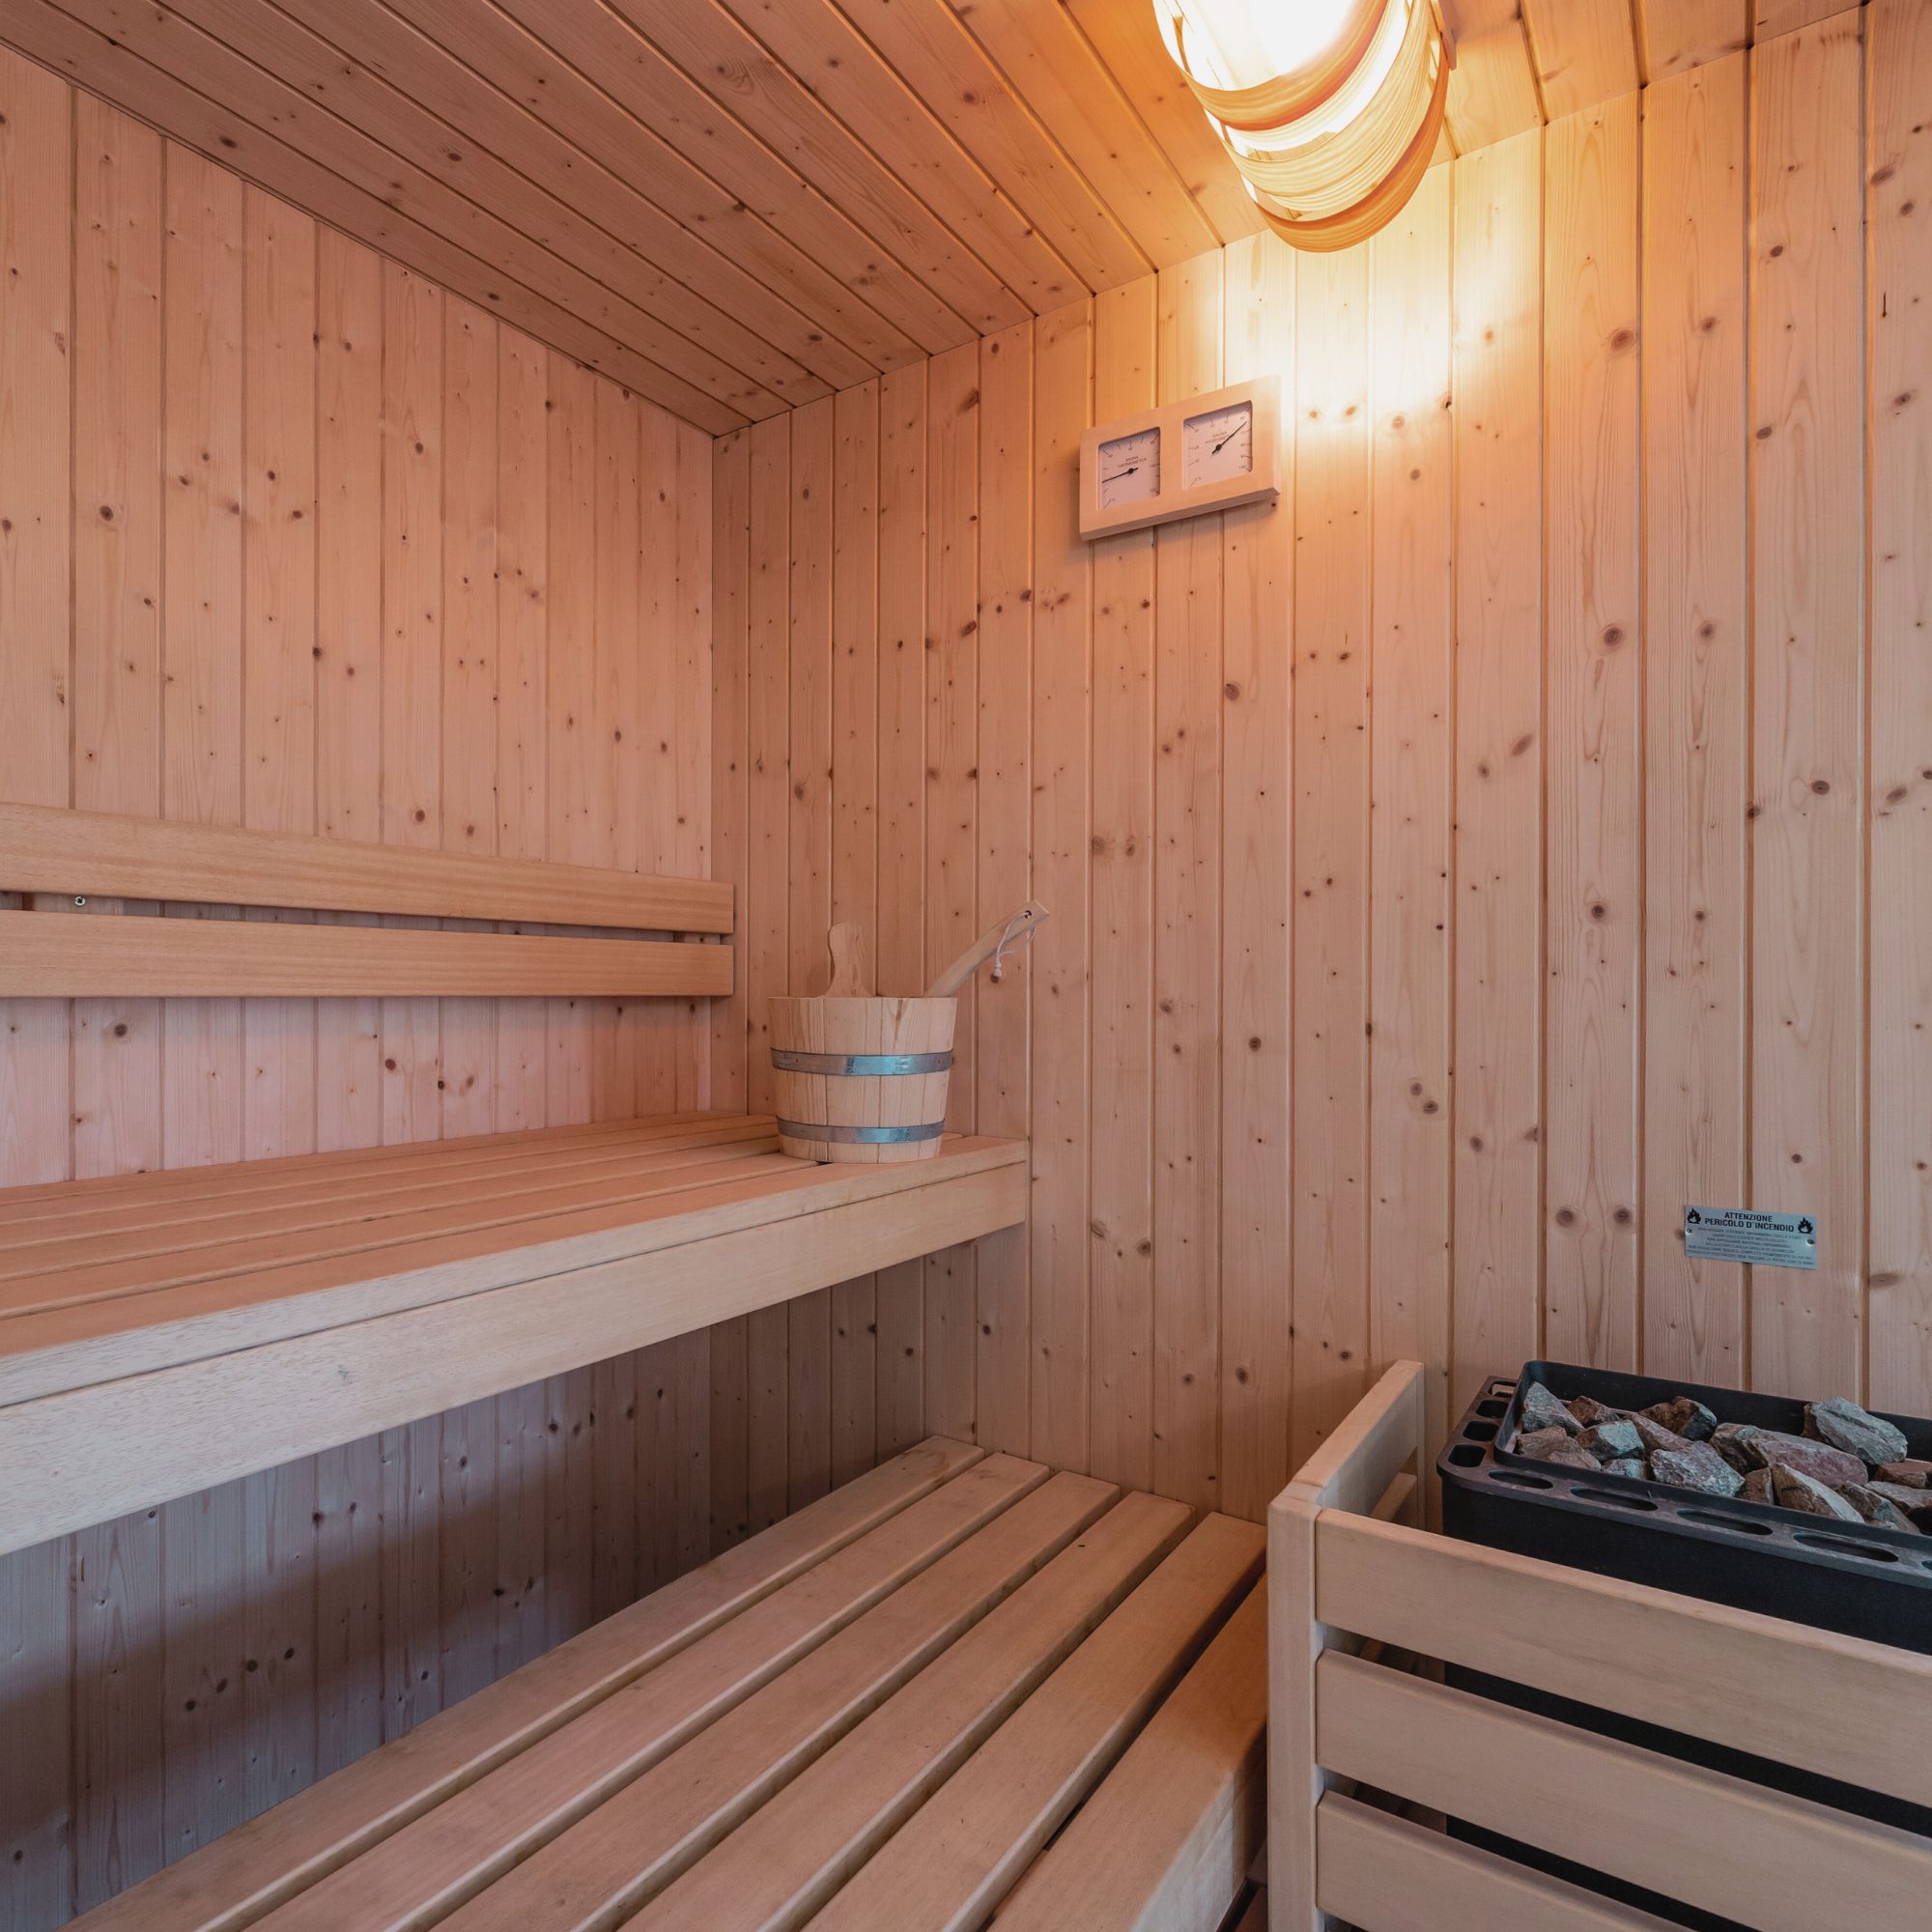 Evo Wellness Realizzazione Sauna Finlandese in abete